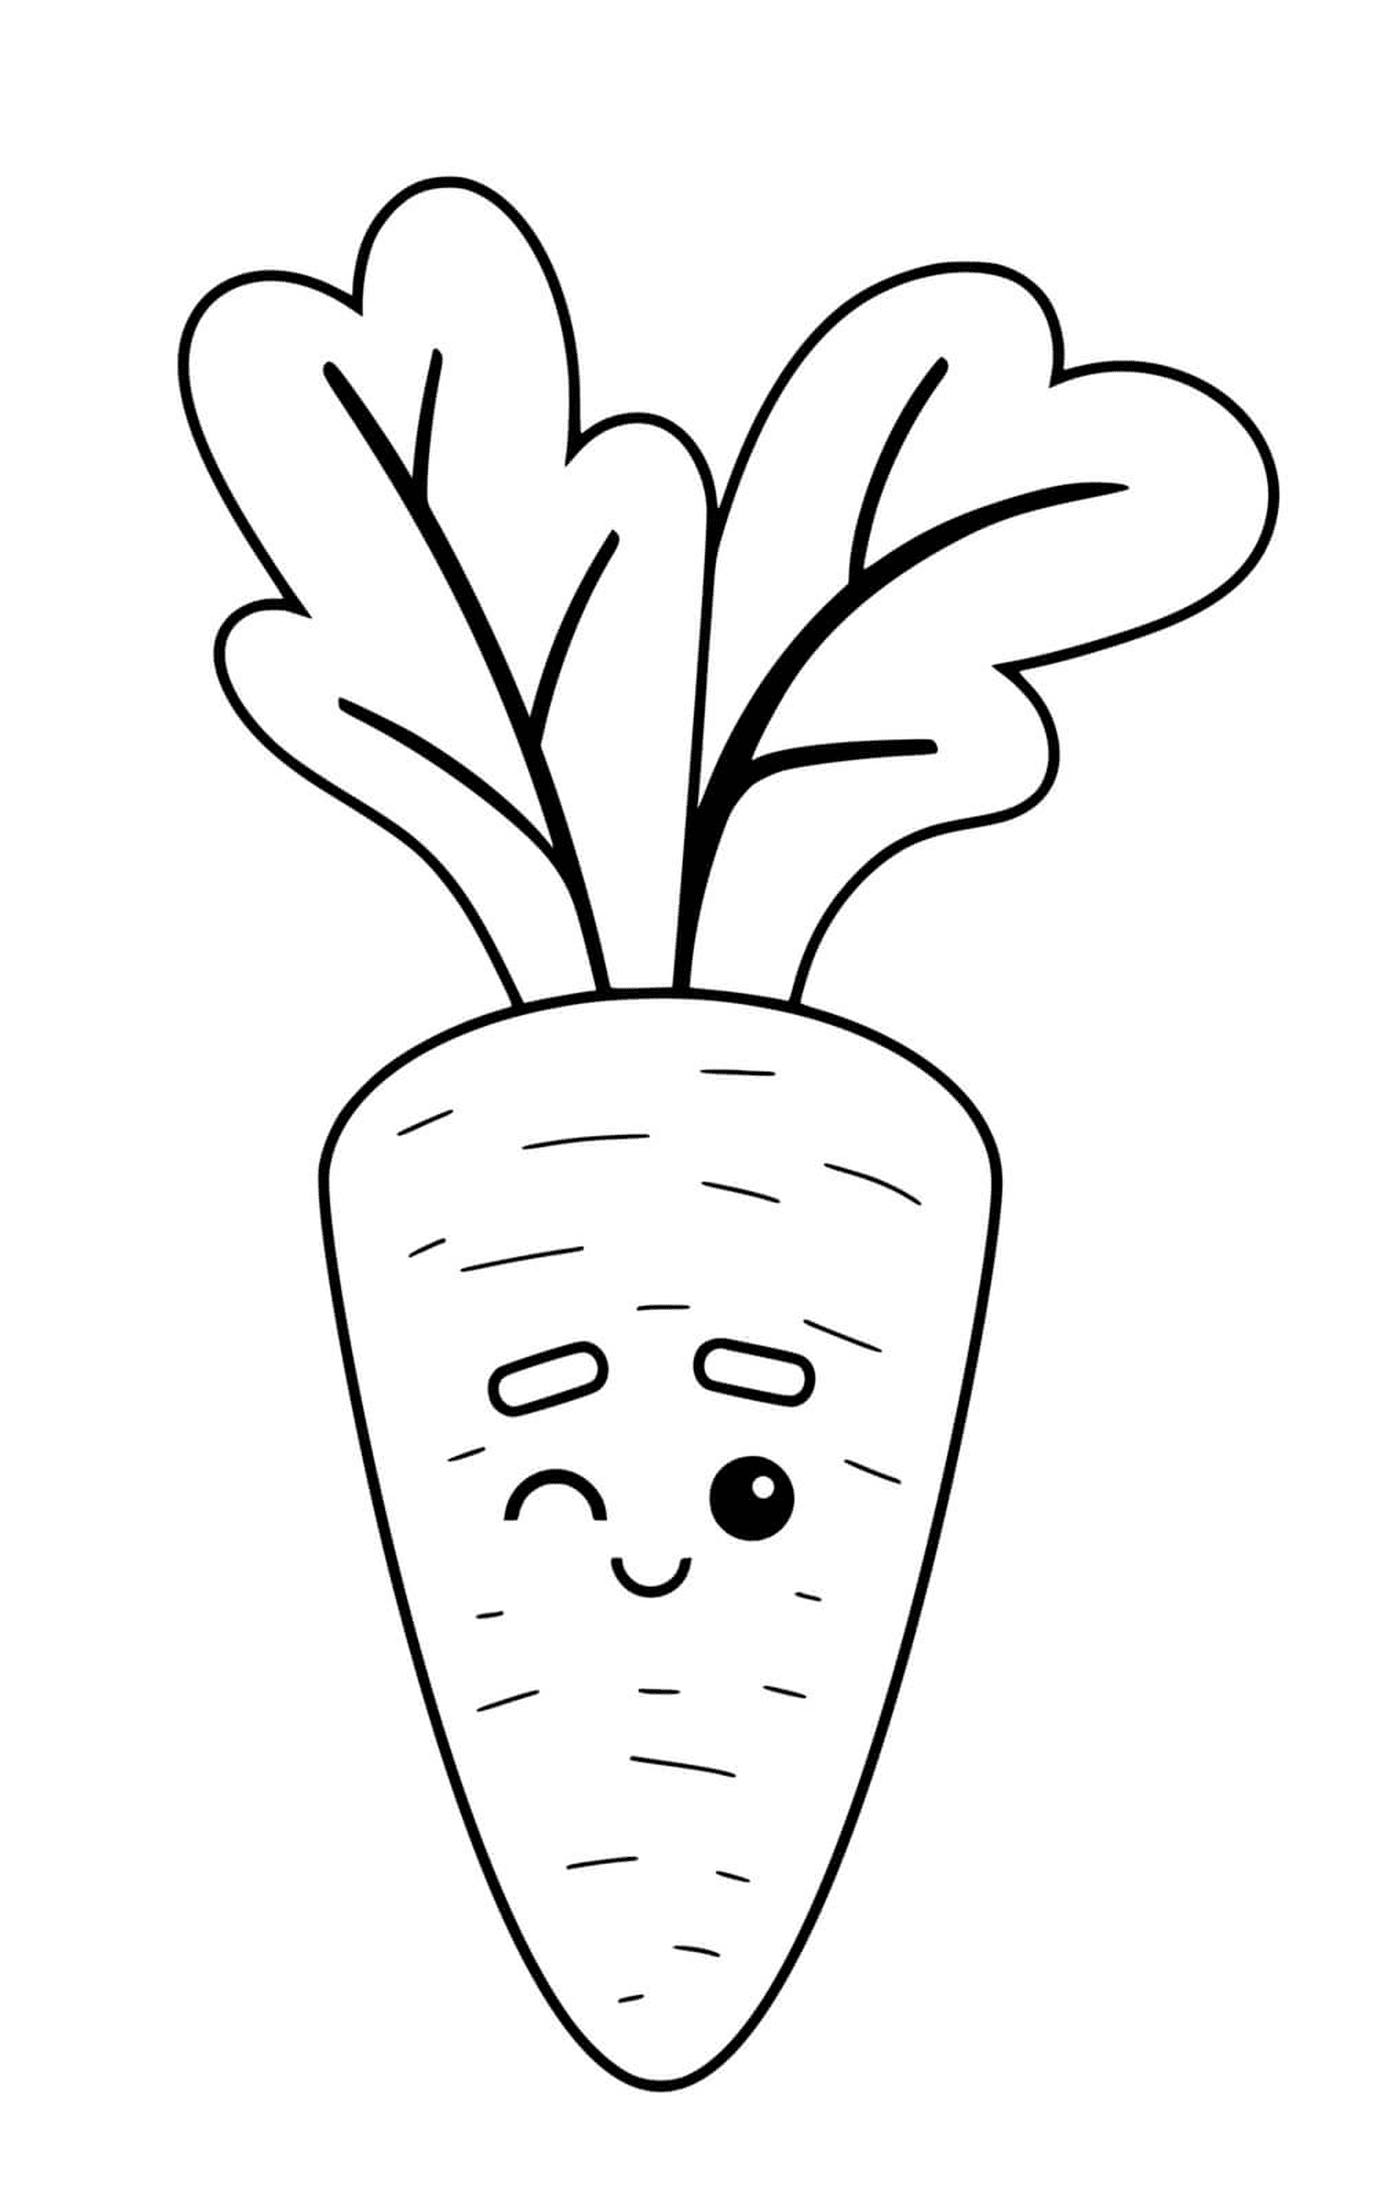  Mutterkarotte blinzelt, eine Karotte 